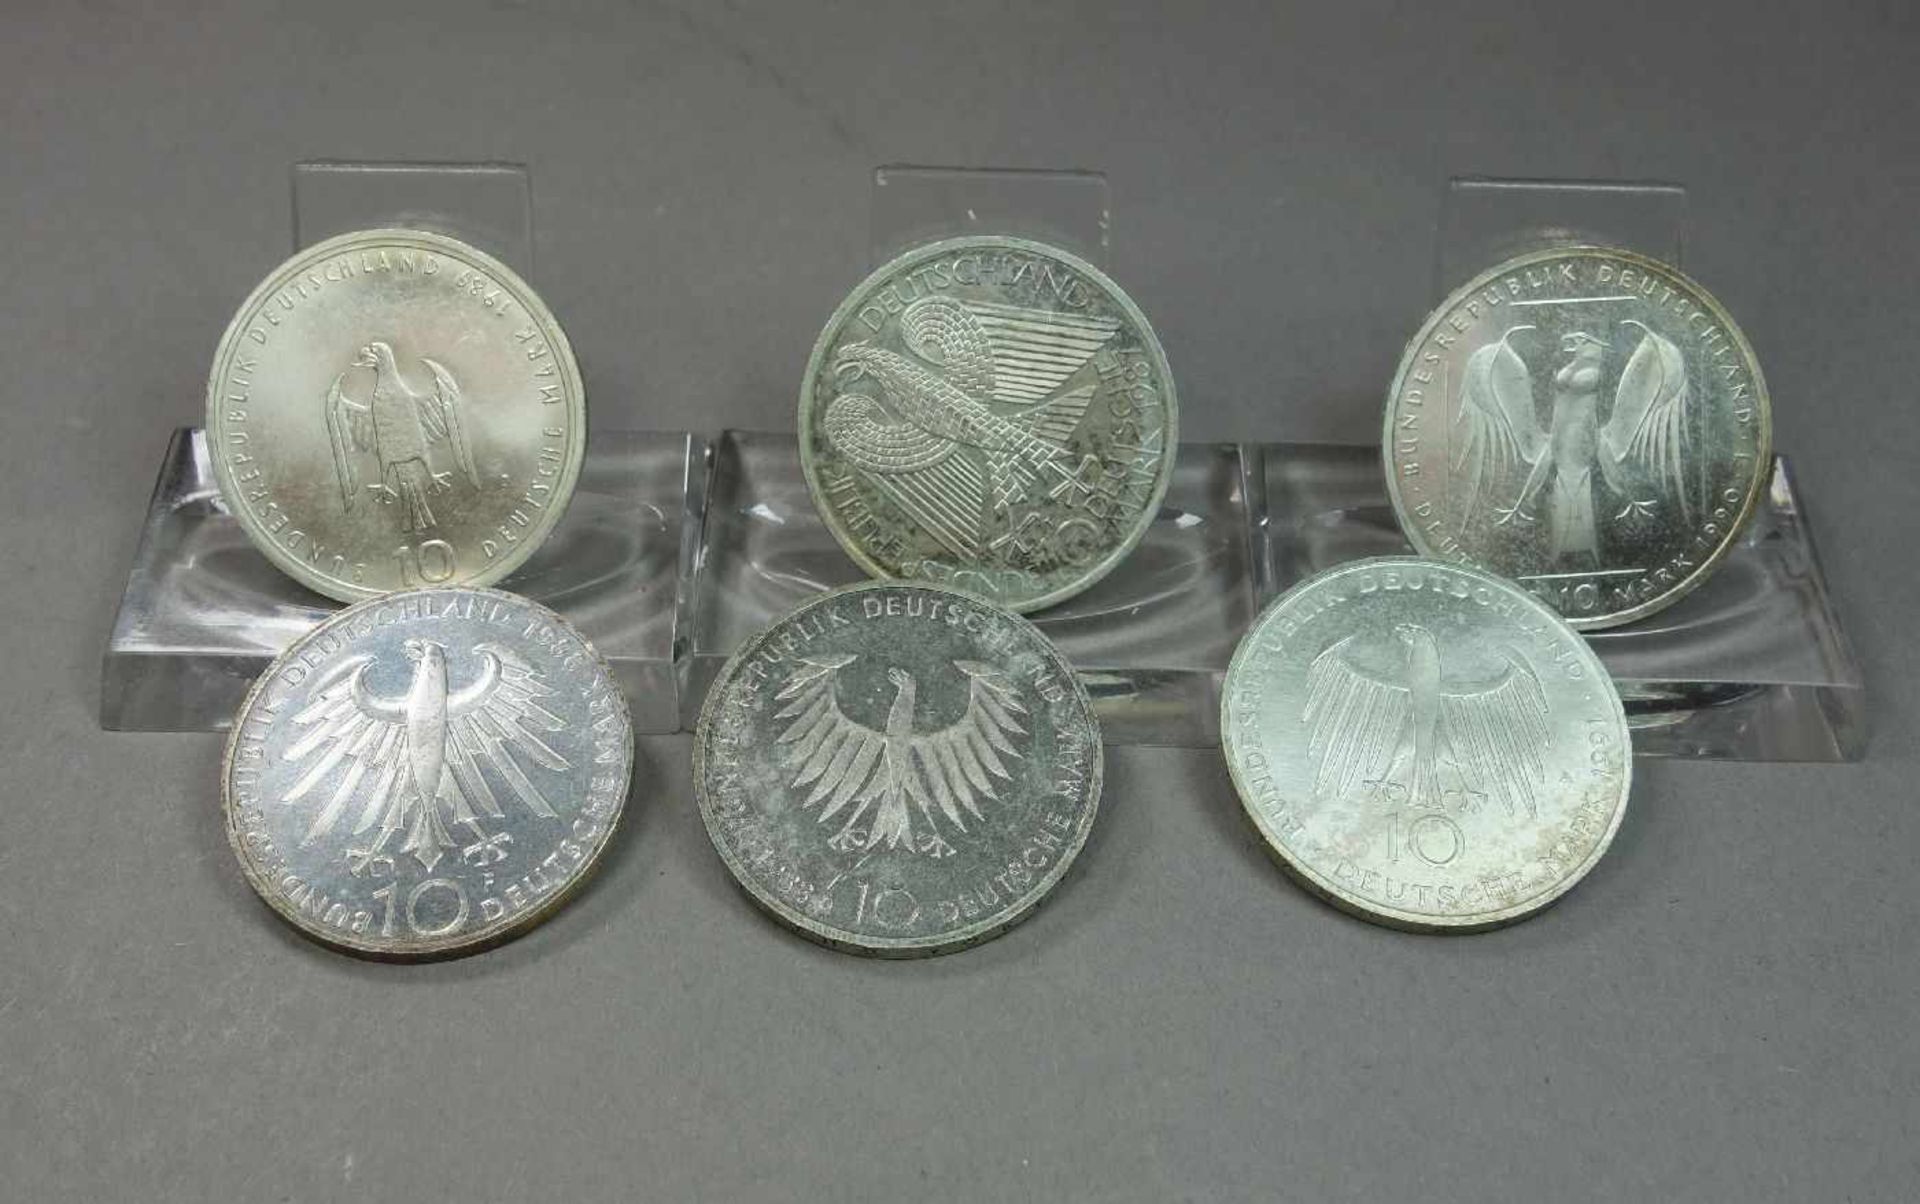 KONVOLUT MÜNZEN: 11 x 10 DM STÜCKE / coins, BRD Deutschland, unterschiedliche Jahrgänge: 1) 1989, G, - Image 6 of 7